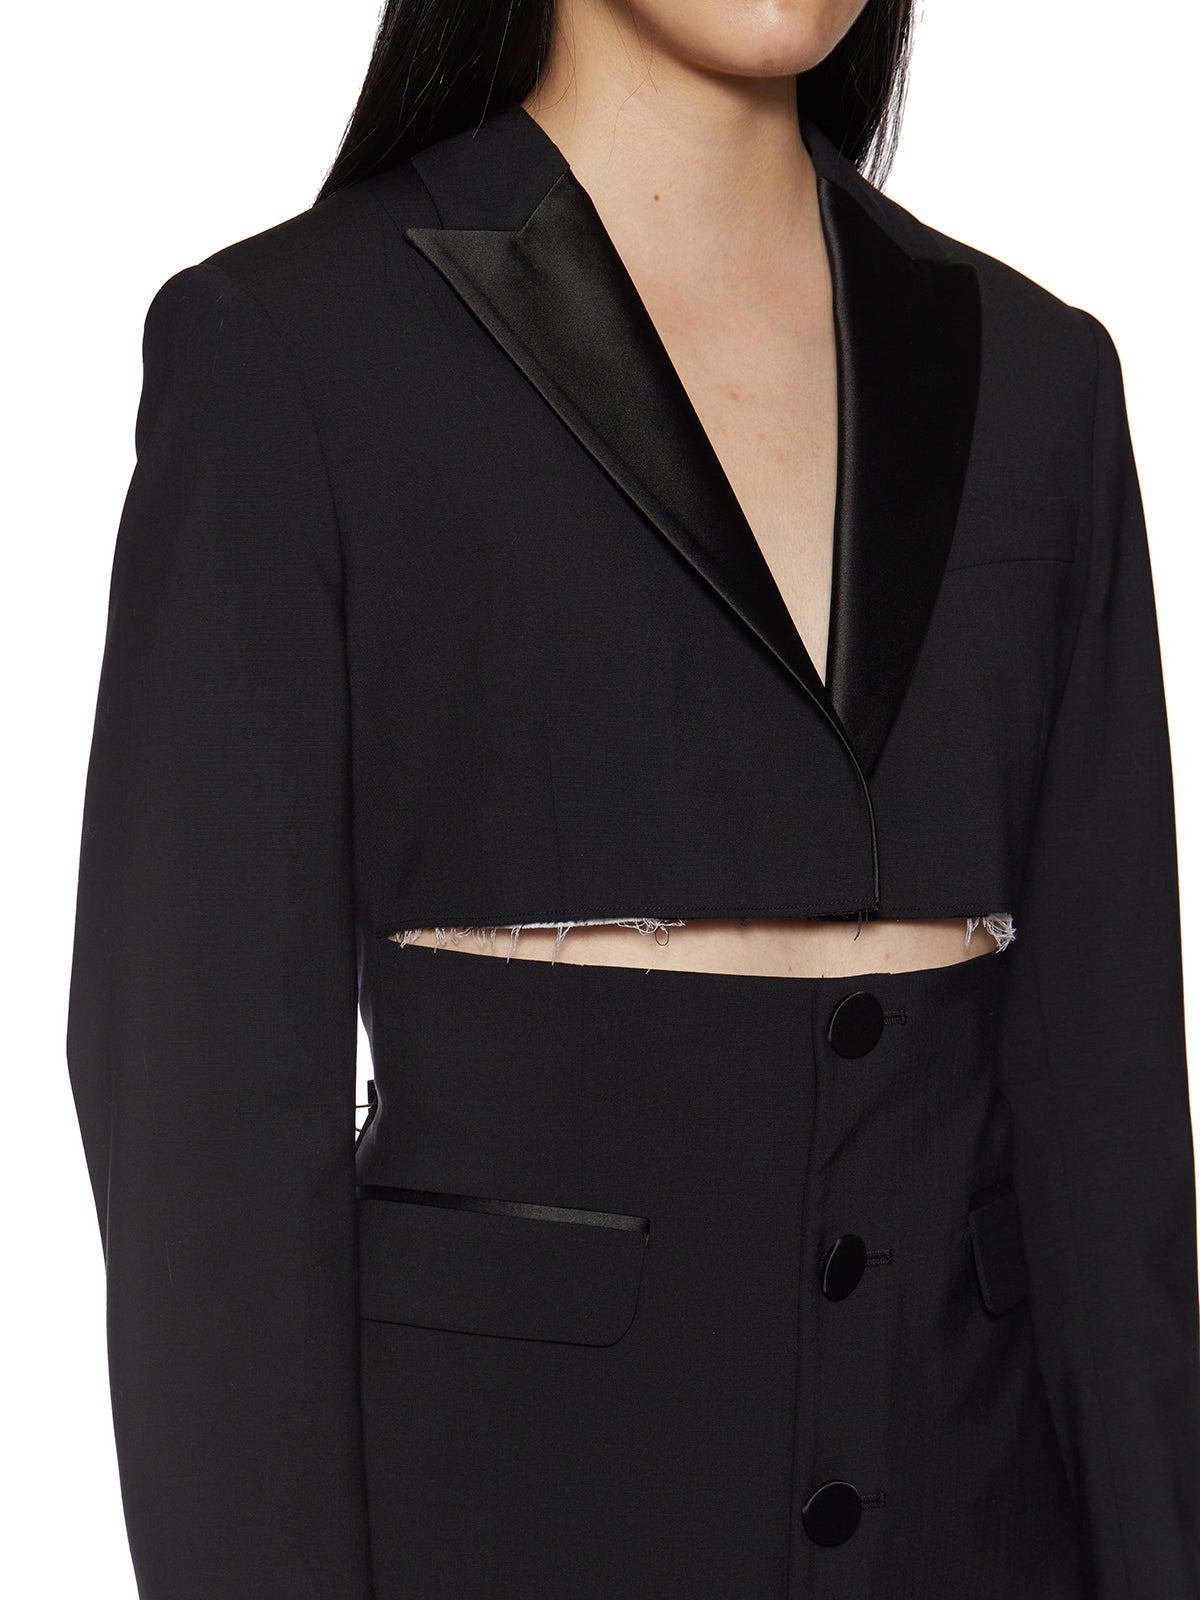 Sleek Black Virgin Wool Dress for Women - FW21